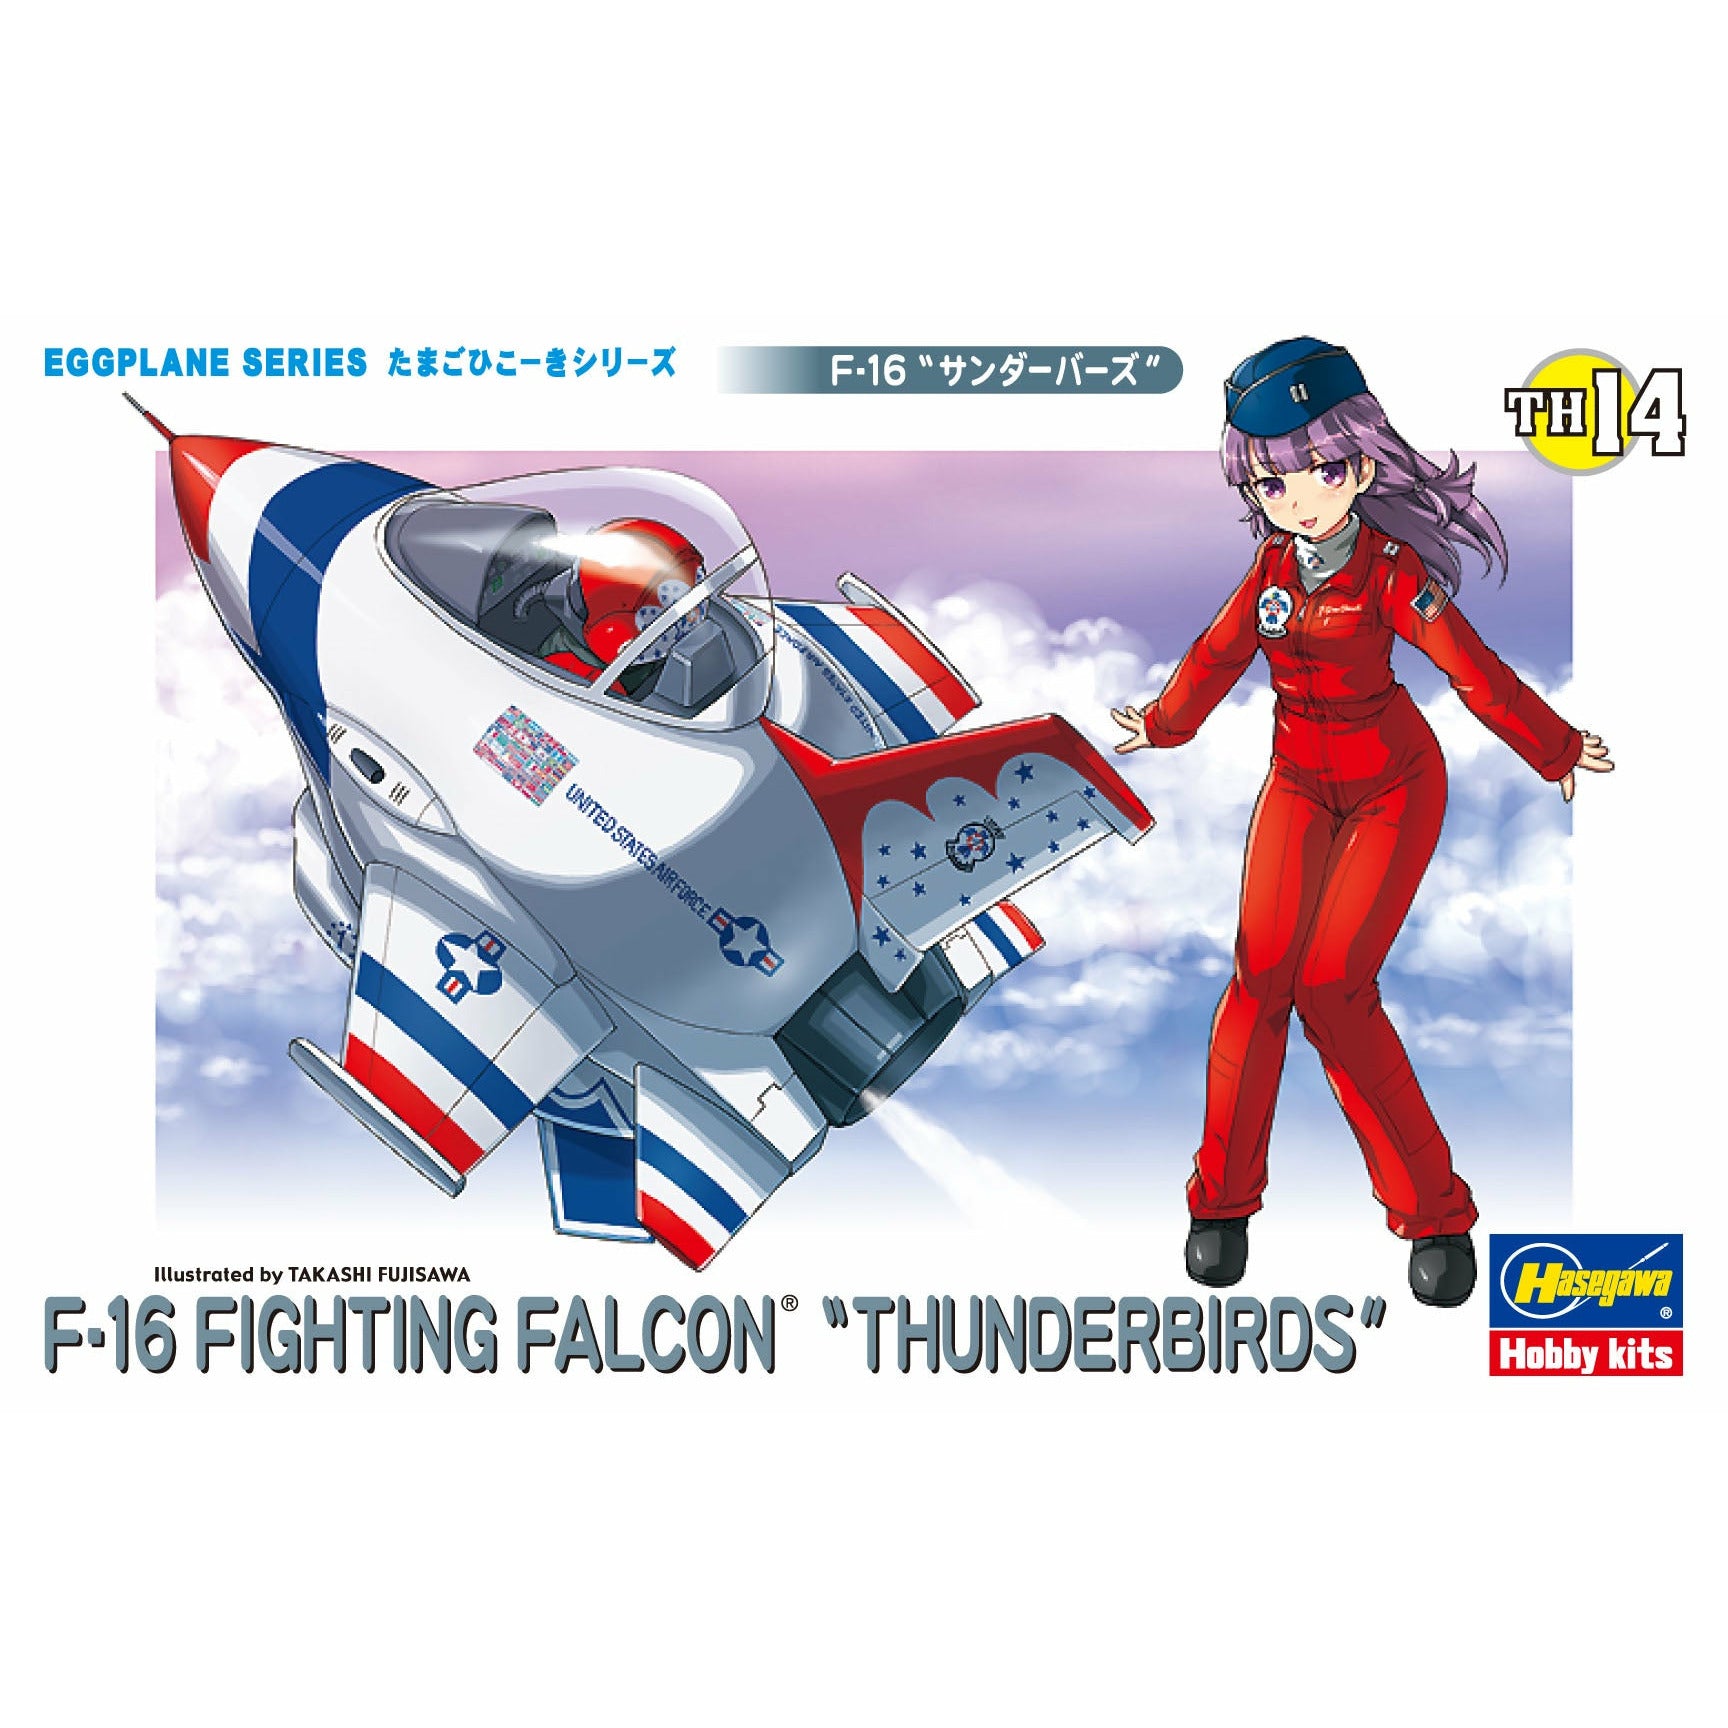 Egg Plane F-16 'Thunderbirds' #60124 by Hawegawa